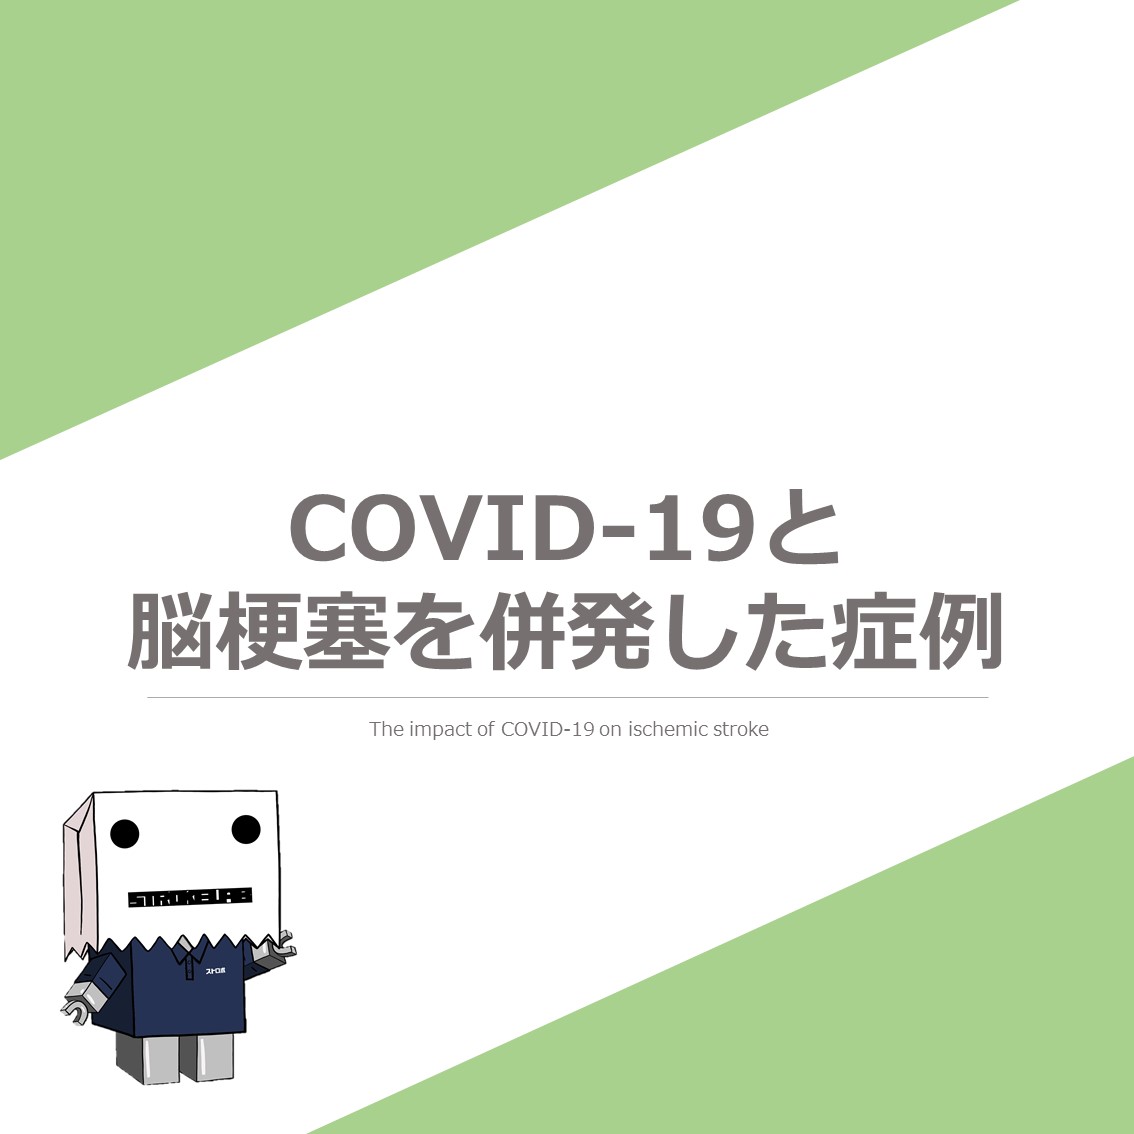 【コロナウイルス】COVID-19と脳梗塞を併発した症例の報告